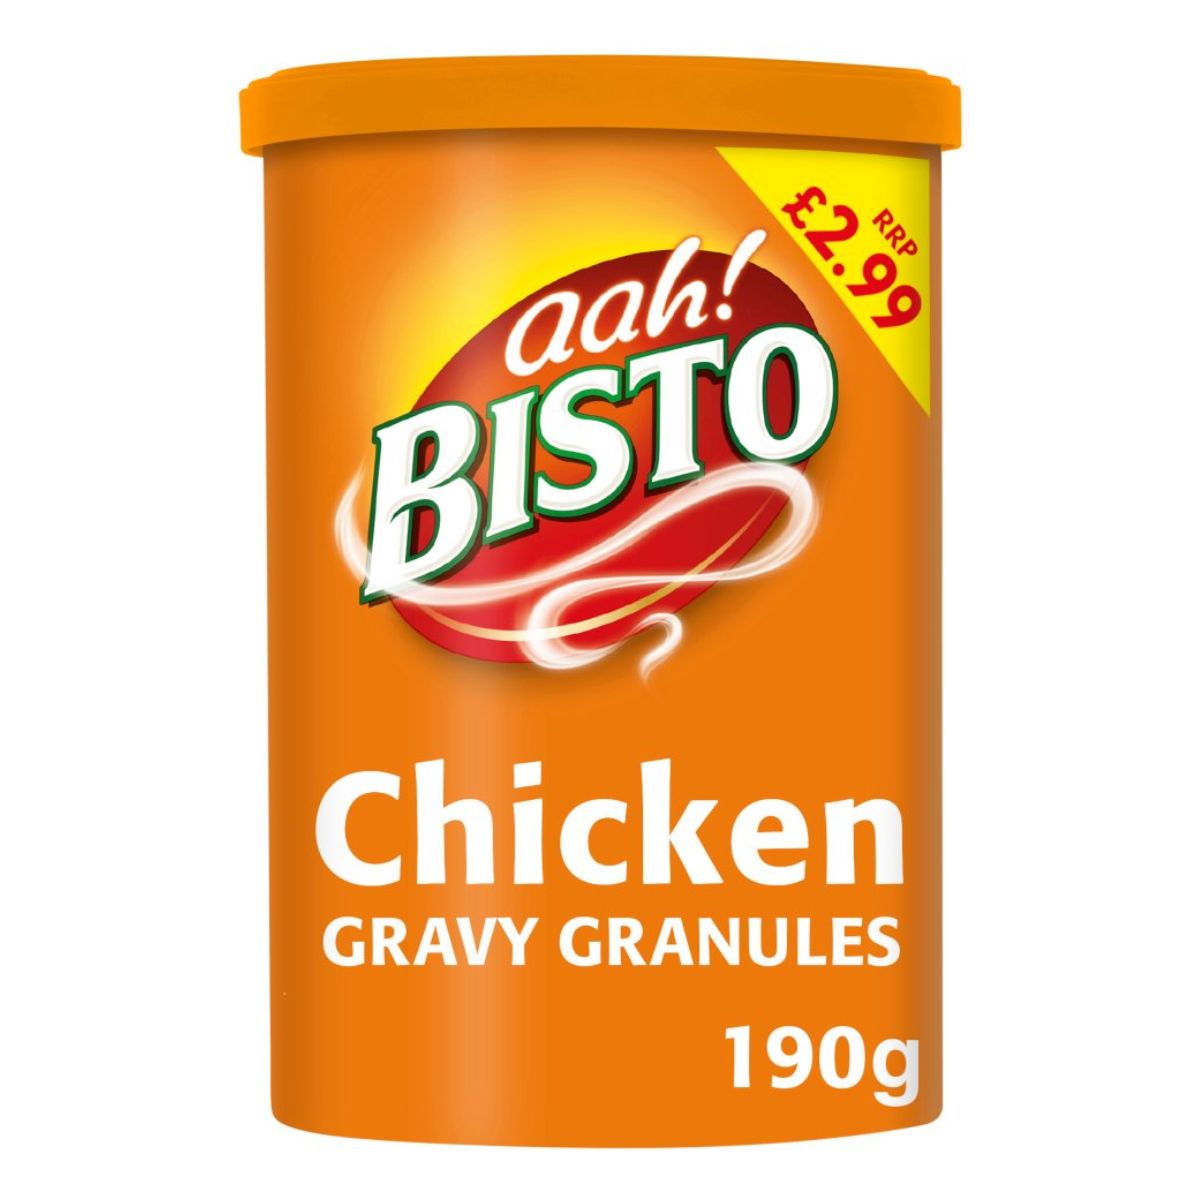 A tin of Bisto - Chicken Gravy Granules - 190g.